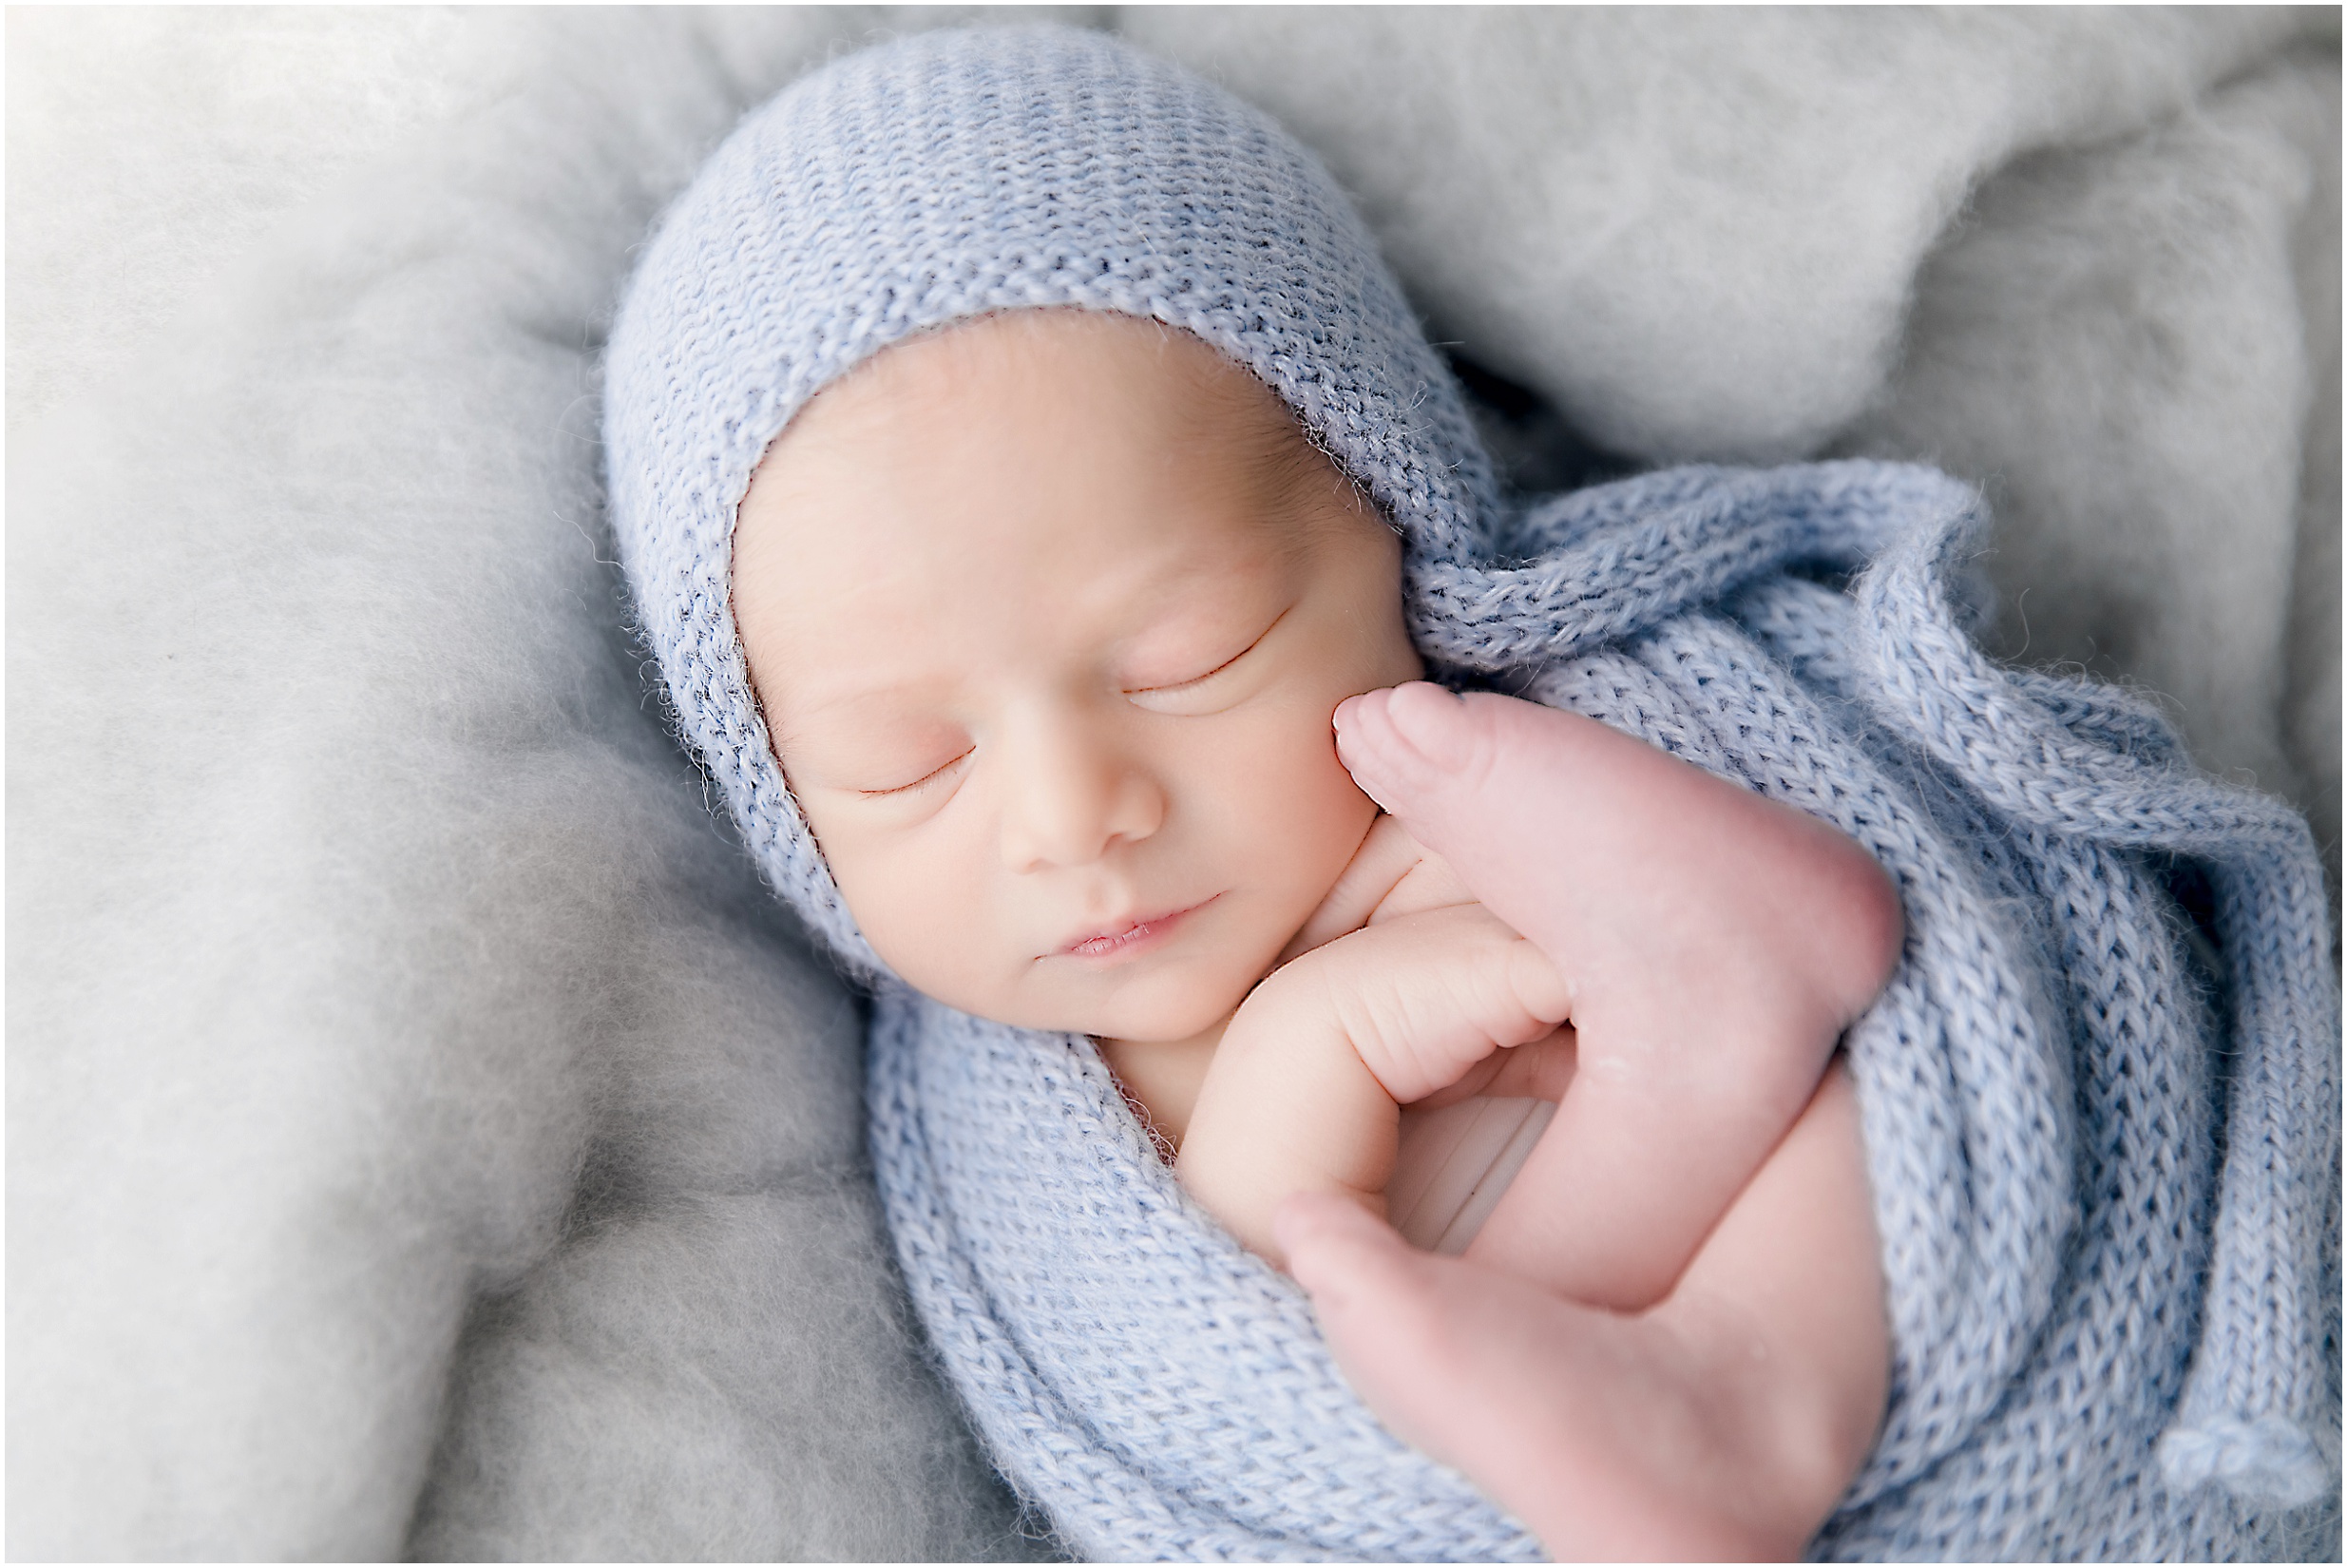 newborn photos, edmonton newborn photographer, nc photography, yeg photographer, edmonton maternity photographer